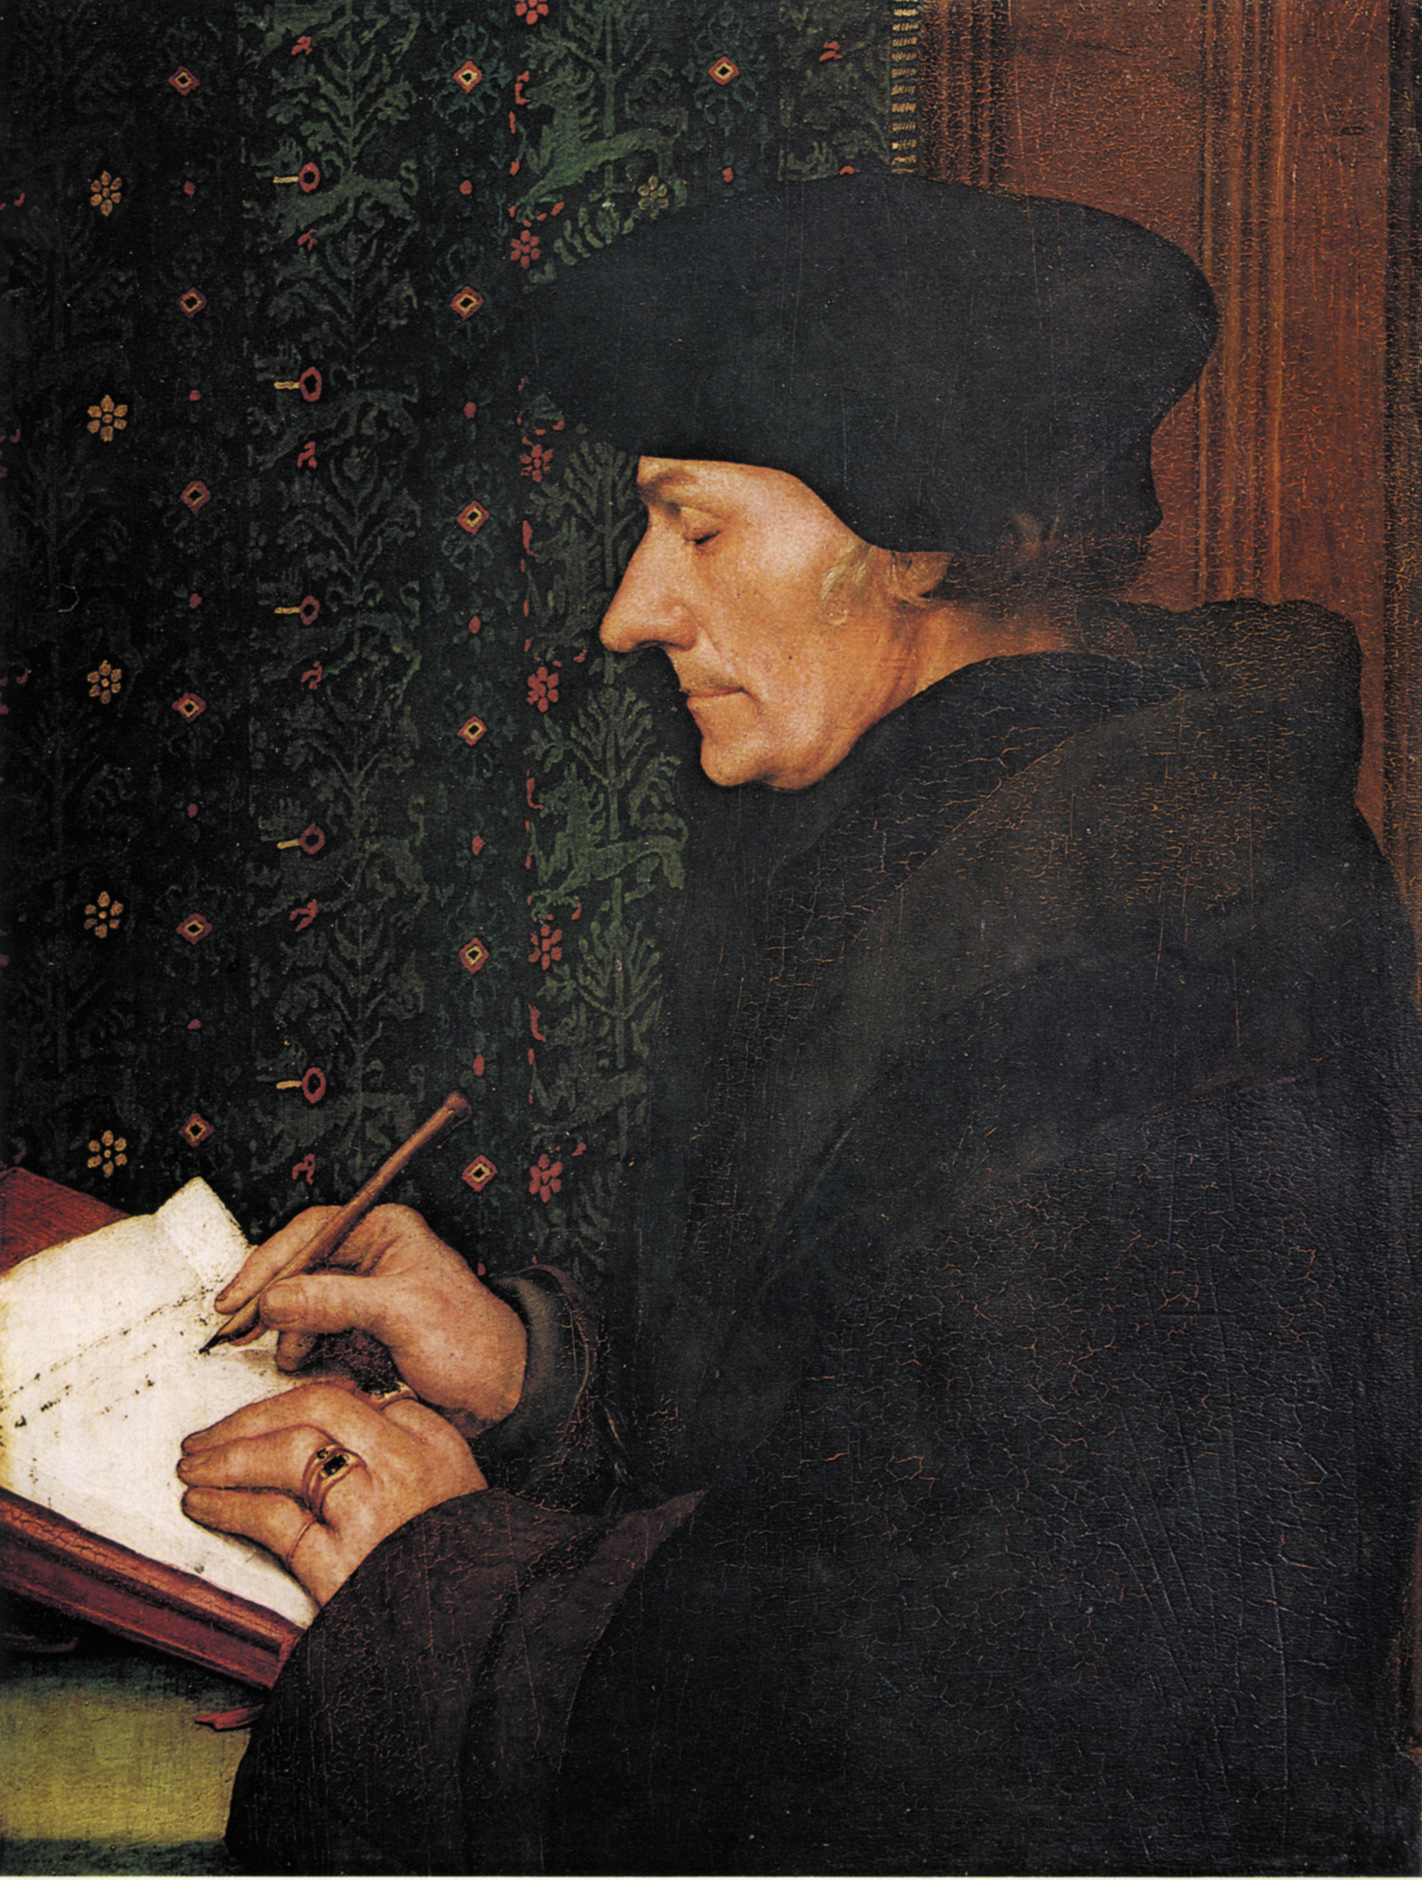 http://de.academic.ru/pictures/dewiki/72/Holbein-Erasmus.jpg